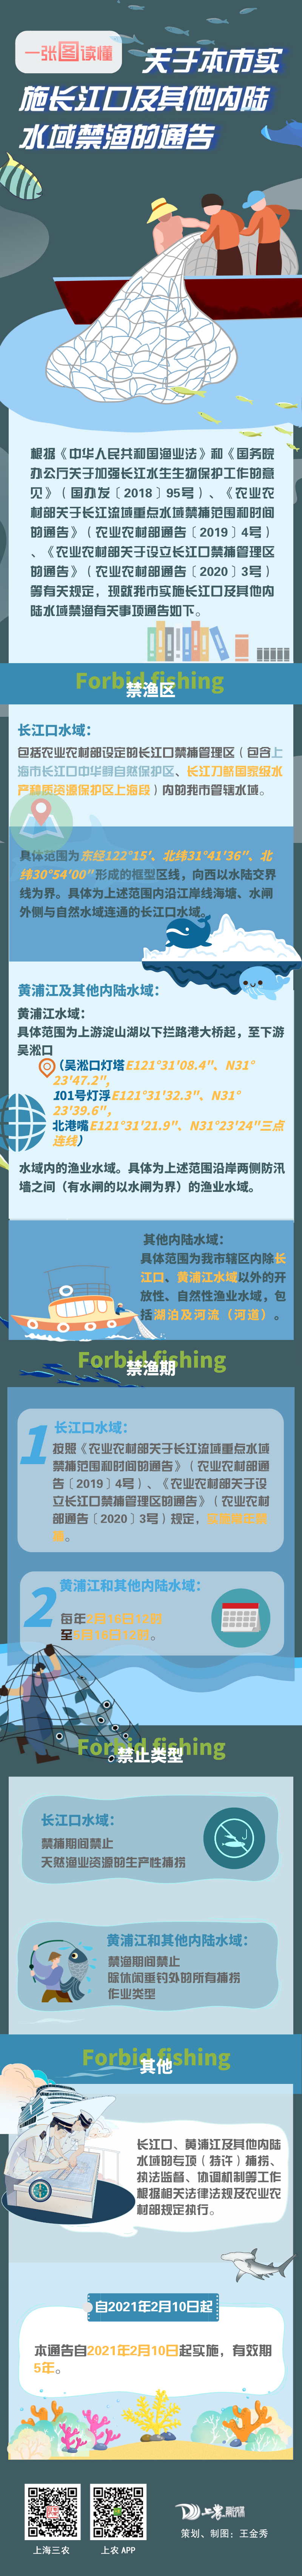 关于本市实施长江口及其他内陆水域禁渔的通告.png